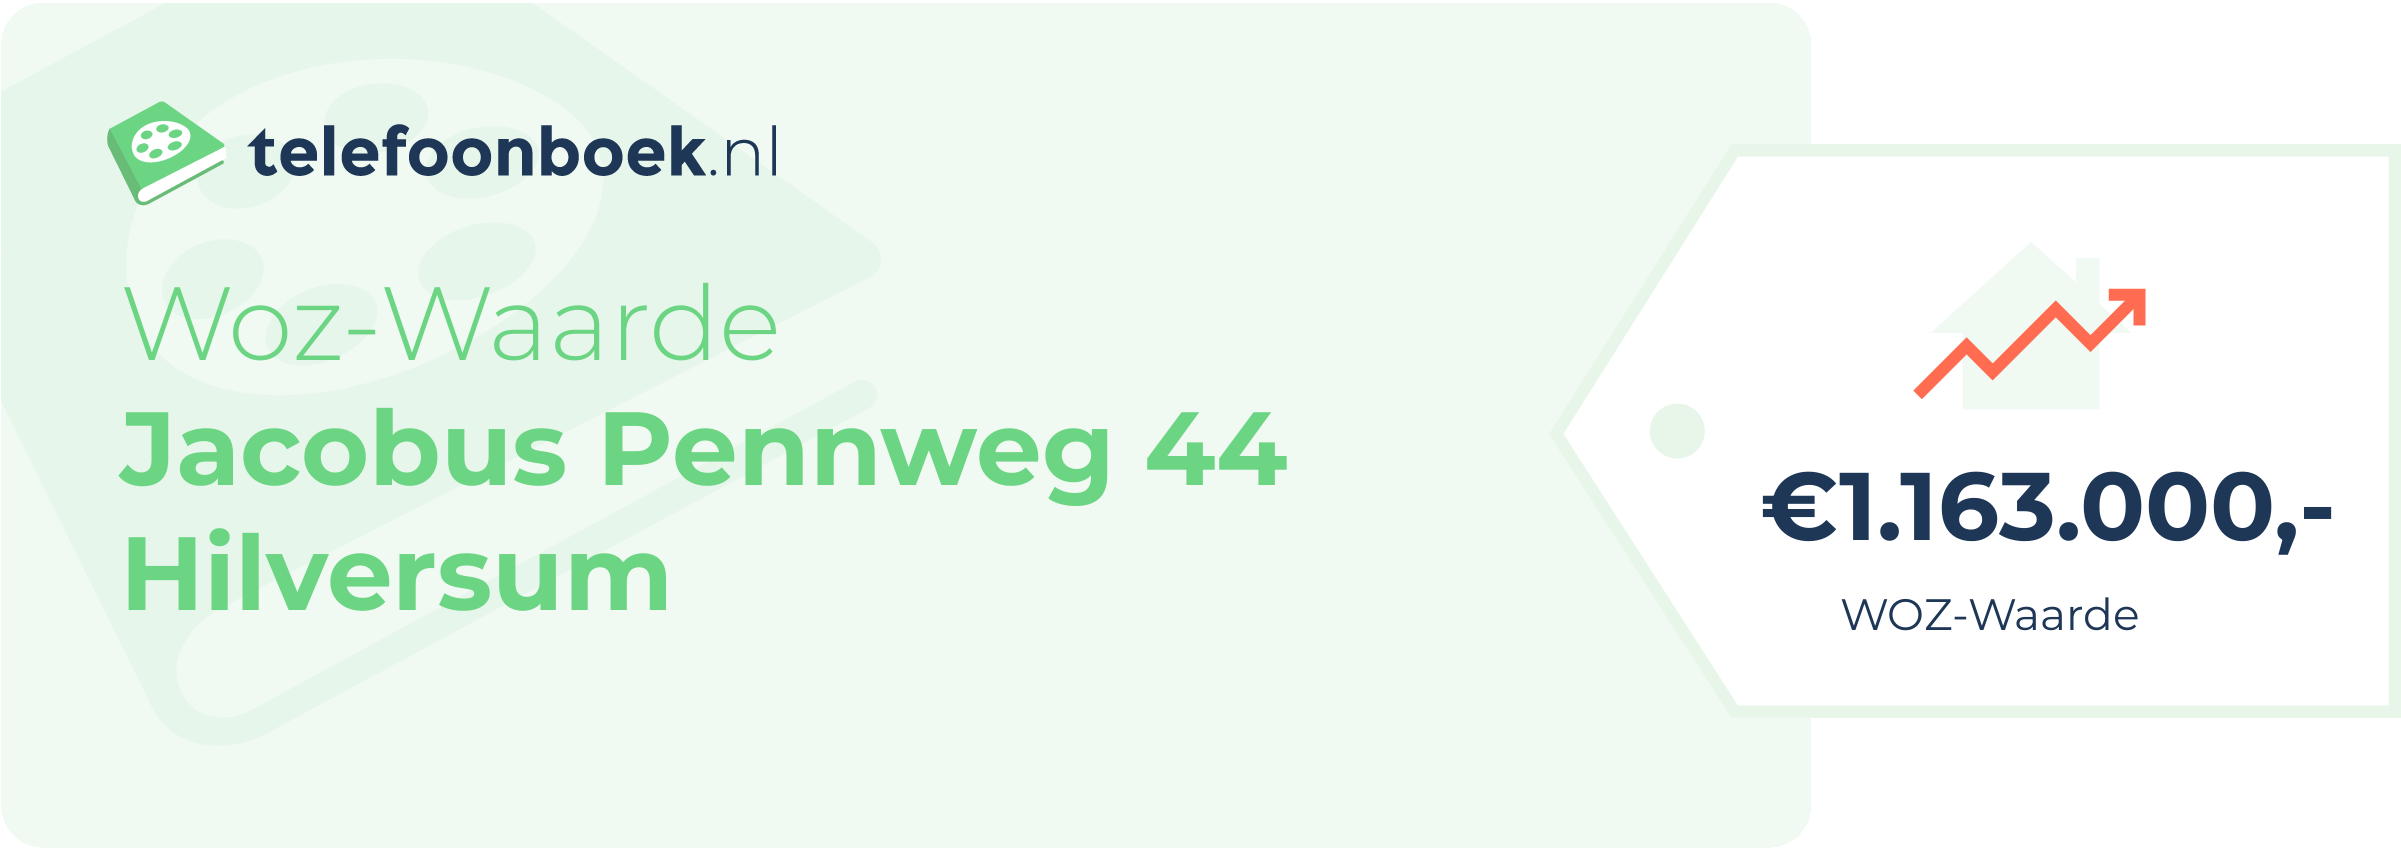 WOZ-waarde Jacobus Pennweg 44 Hilversum